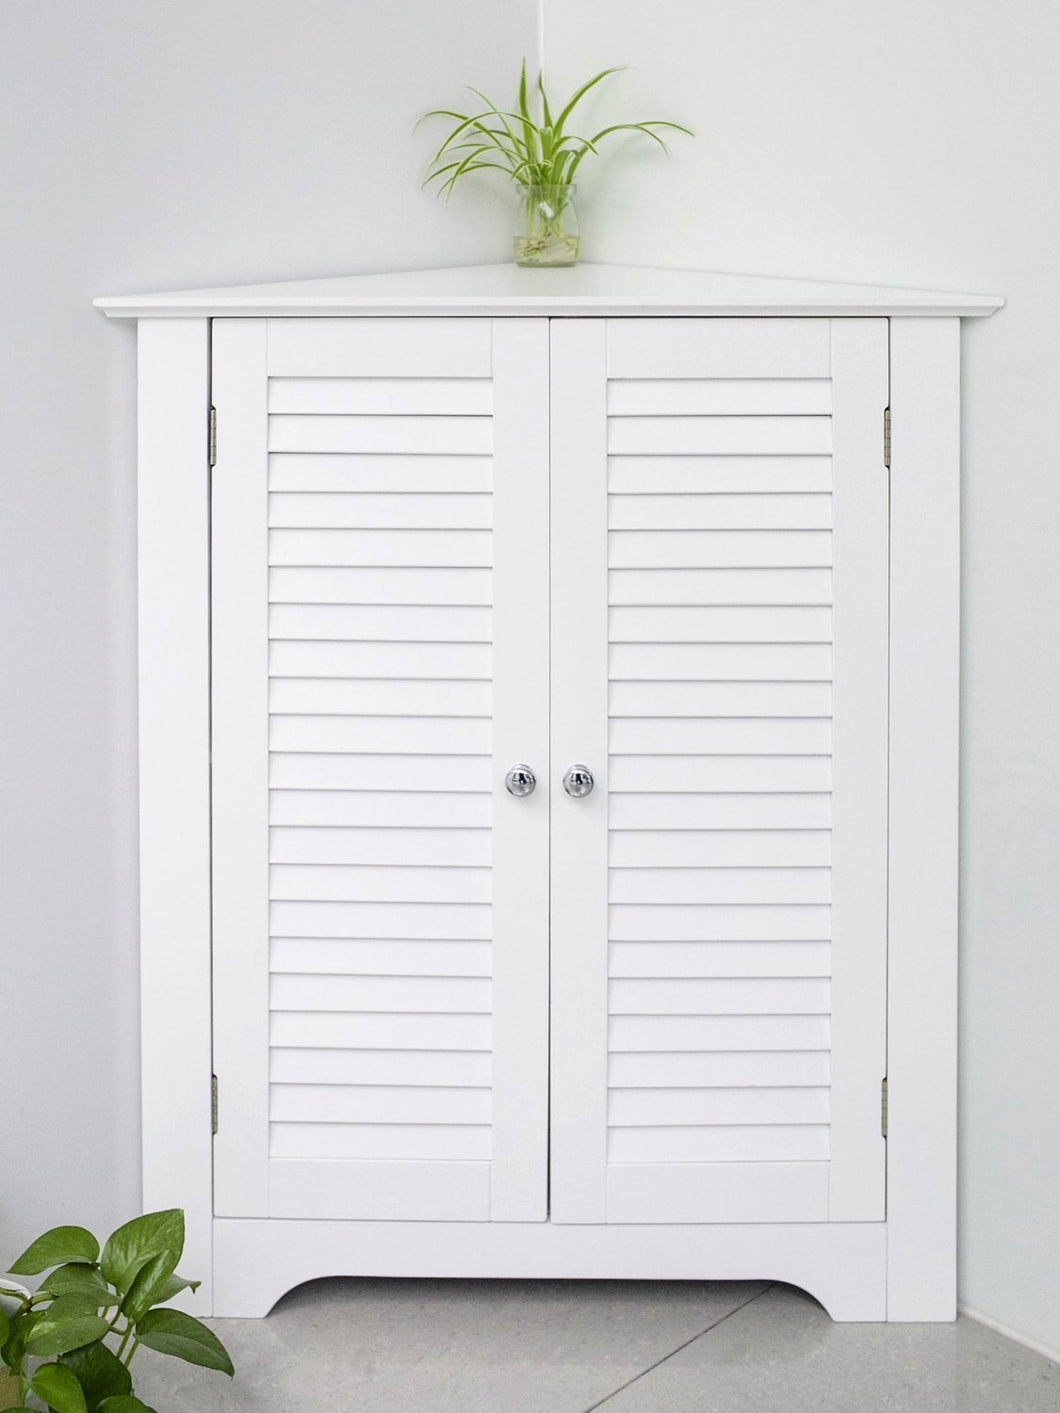 (NEW FOR SALE )Merax® Corner Cabinet Double Door Floor Bathroom Storage Cabinet Triangle Design, White